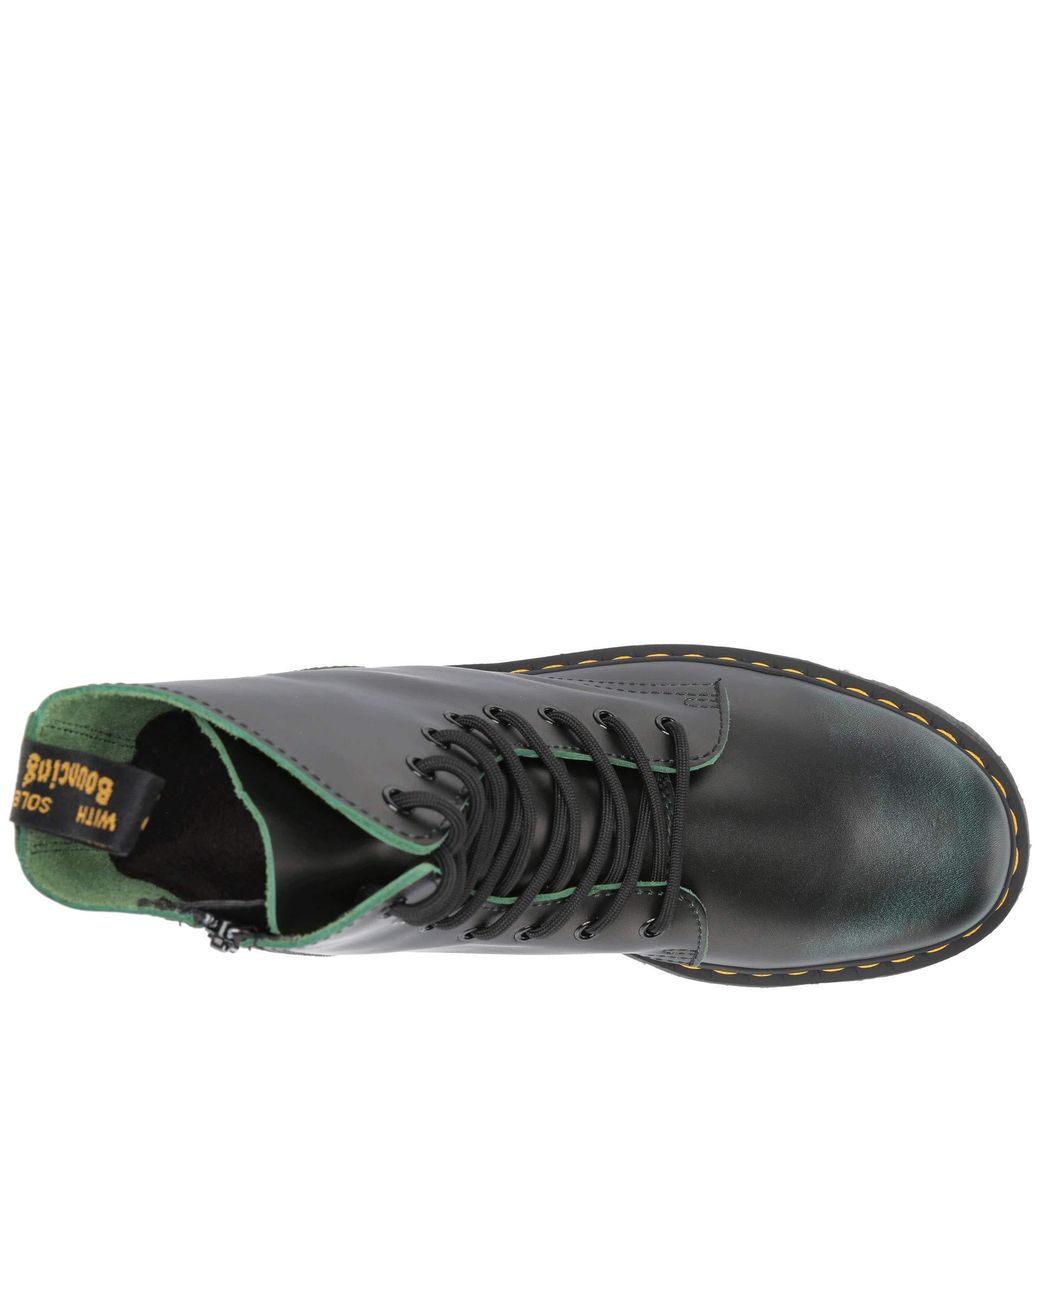 Dr. Martens Jadon Vintage (green Vintage) Boots for Men | Lyst